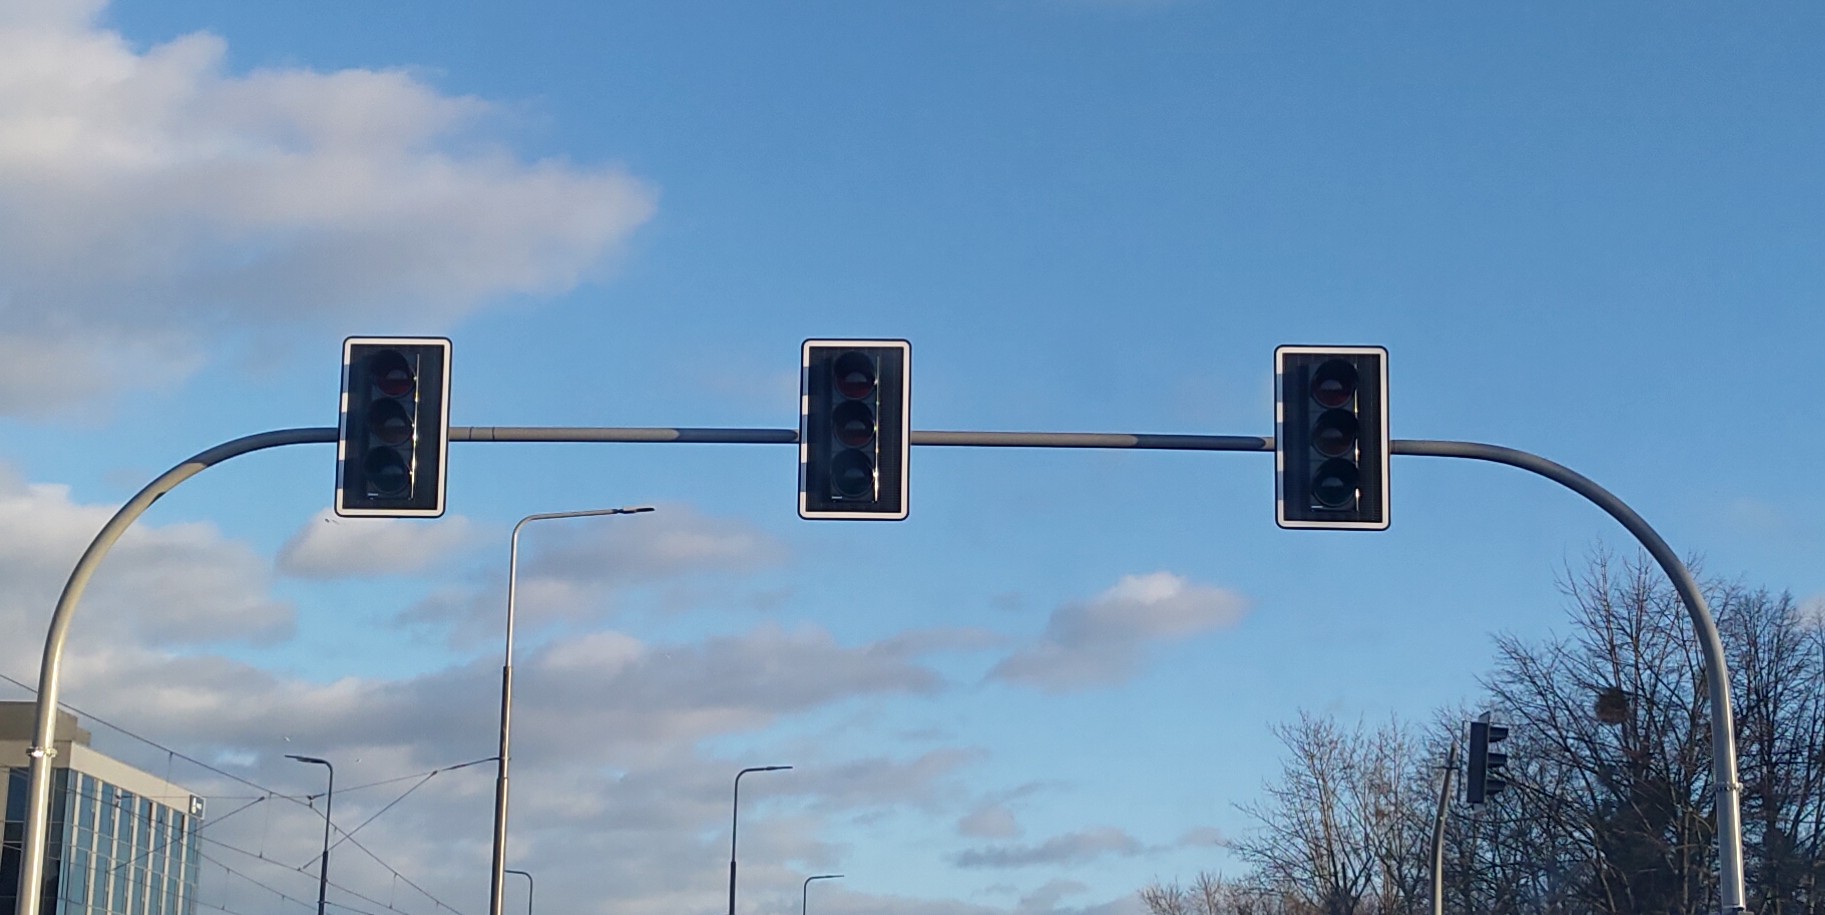 Awaria sygnalizacji świetlnej na skrzyżowaniu ul. Królowej Jadwigi, Drogi Dębińskiej i Garbar